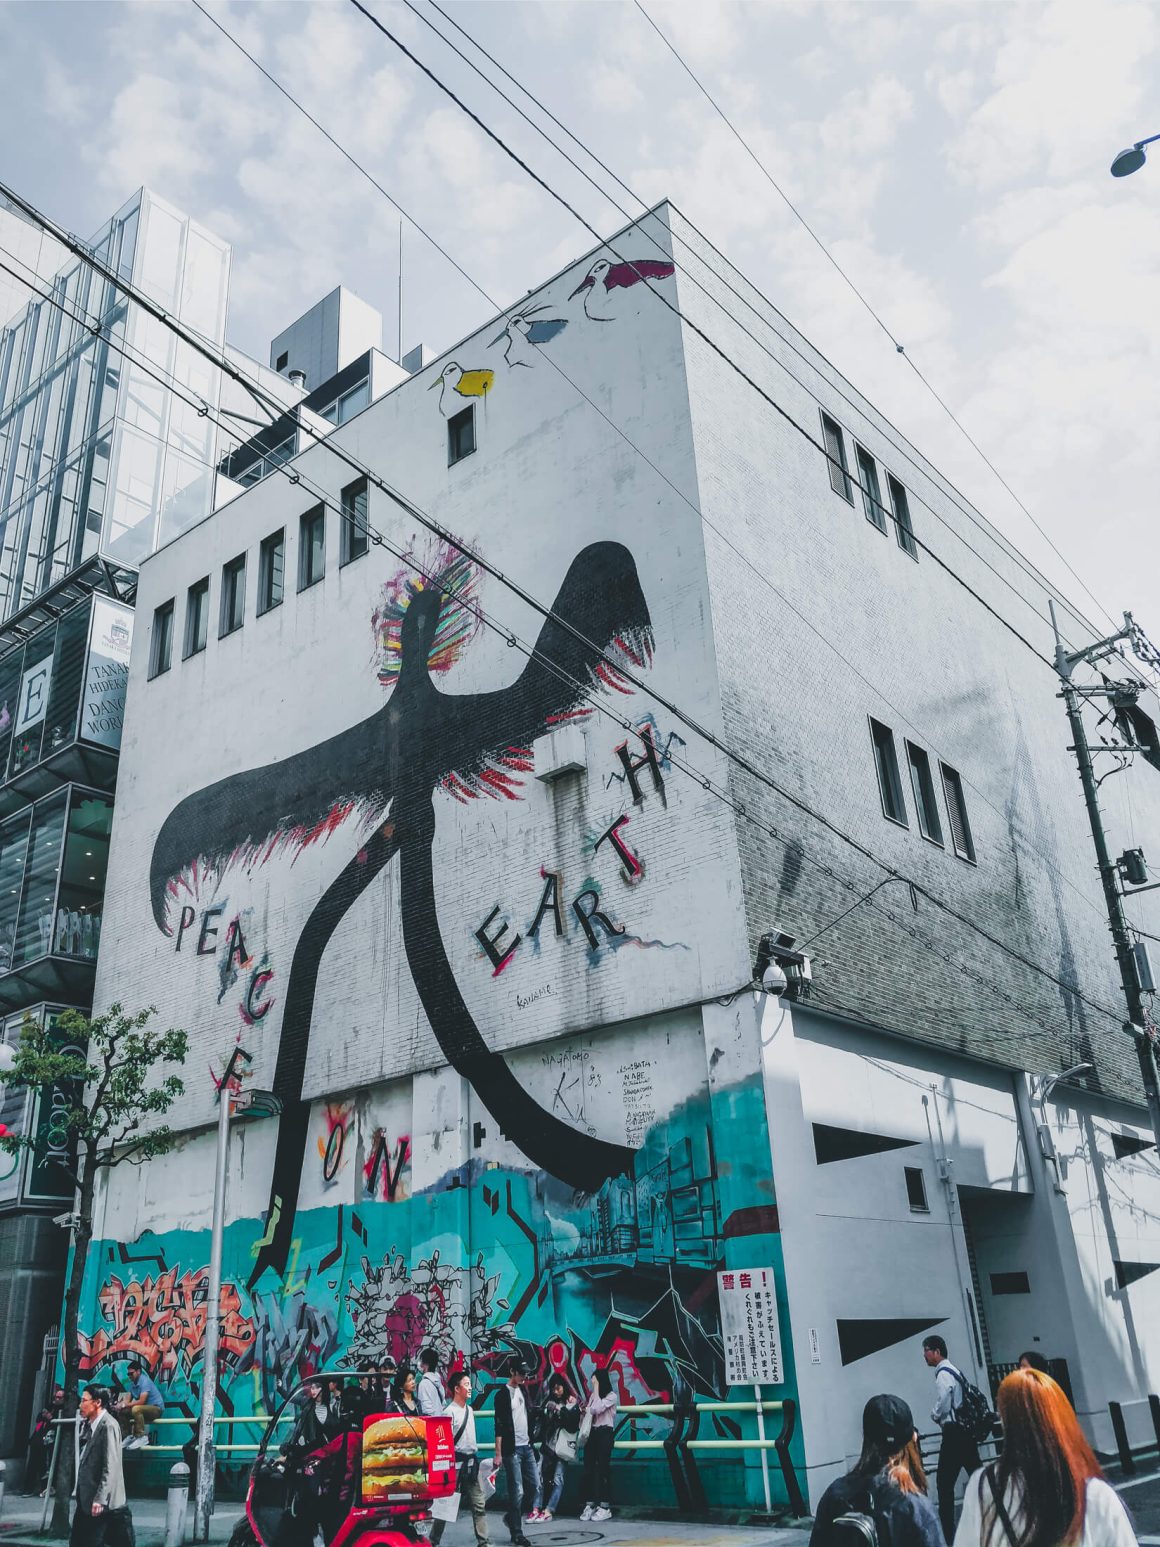 Street art in de wijk Amerika Mura Osaka